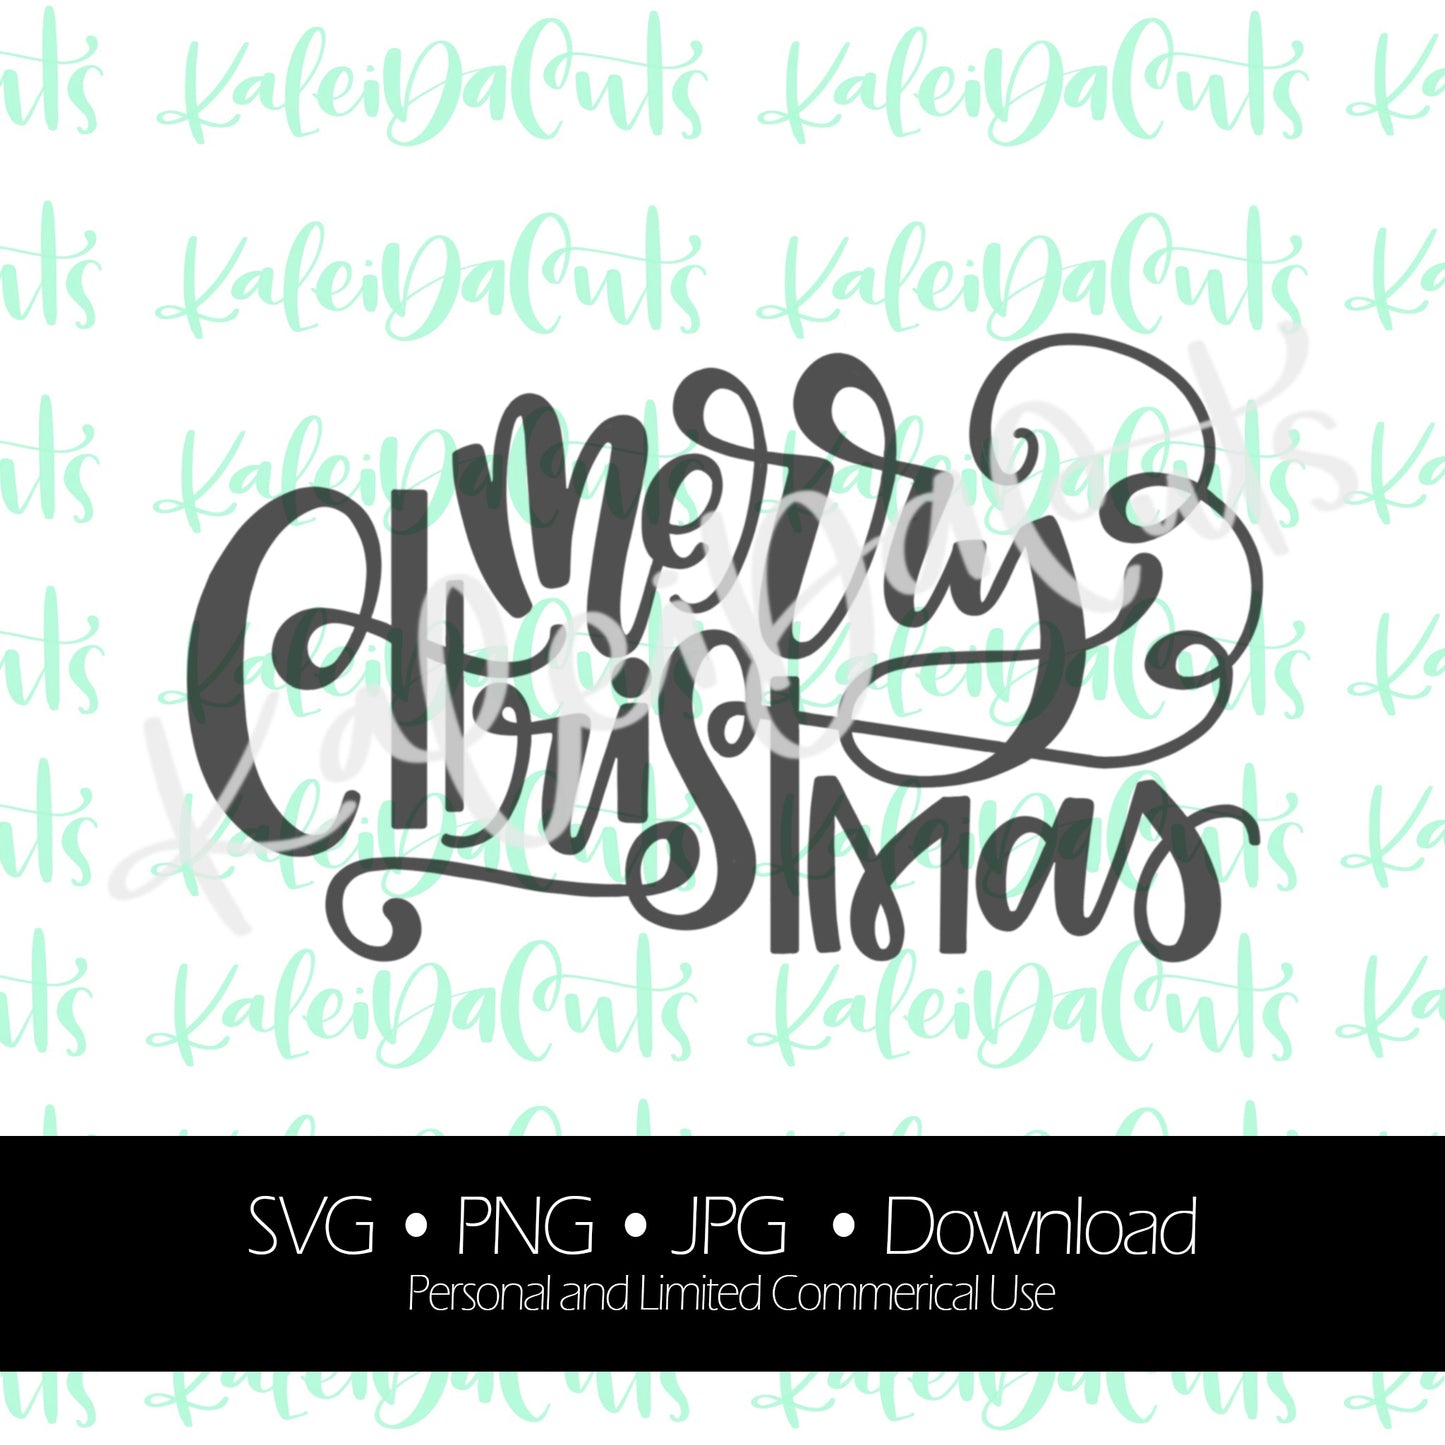 Merry Christmas 2 Digital Download. KaleidaCuts Lettering.